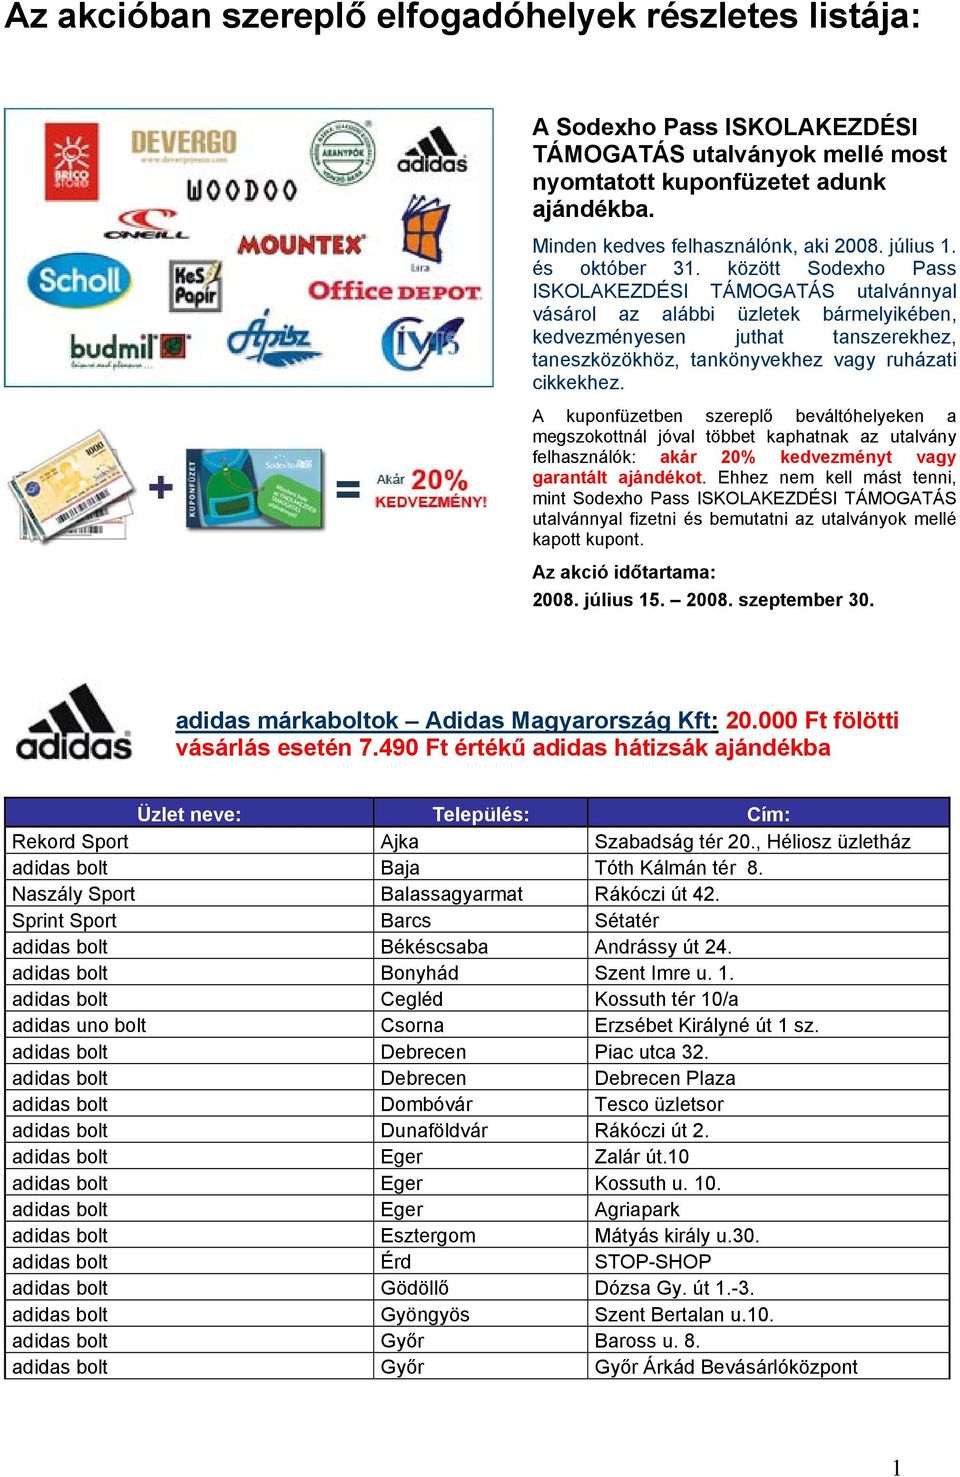 Adidas üzletek - Ajándék adidas hátizsák - PDF Free Download